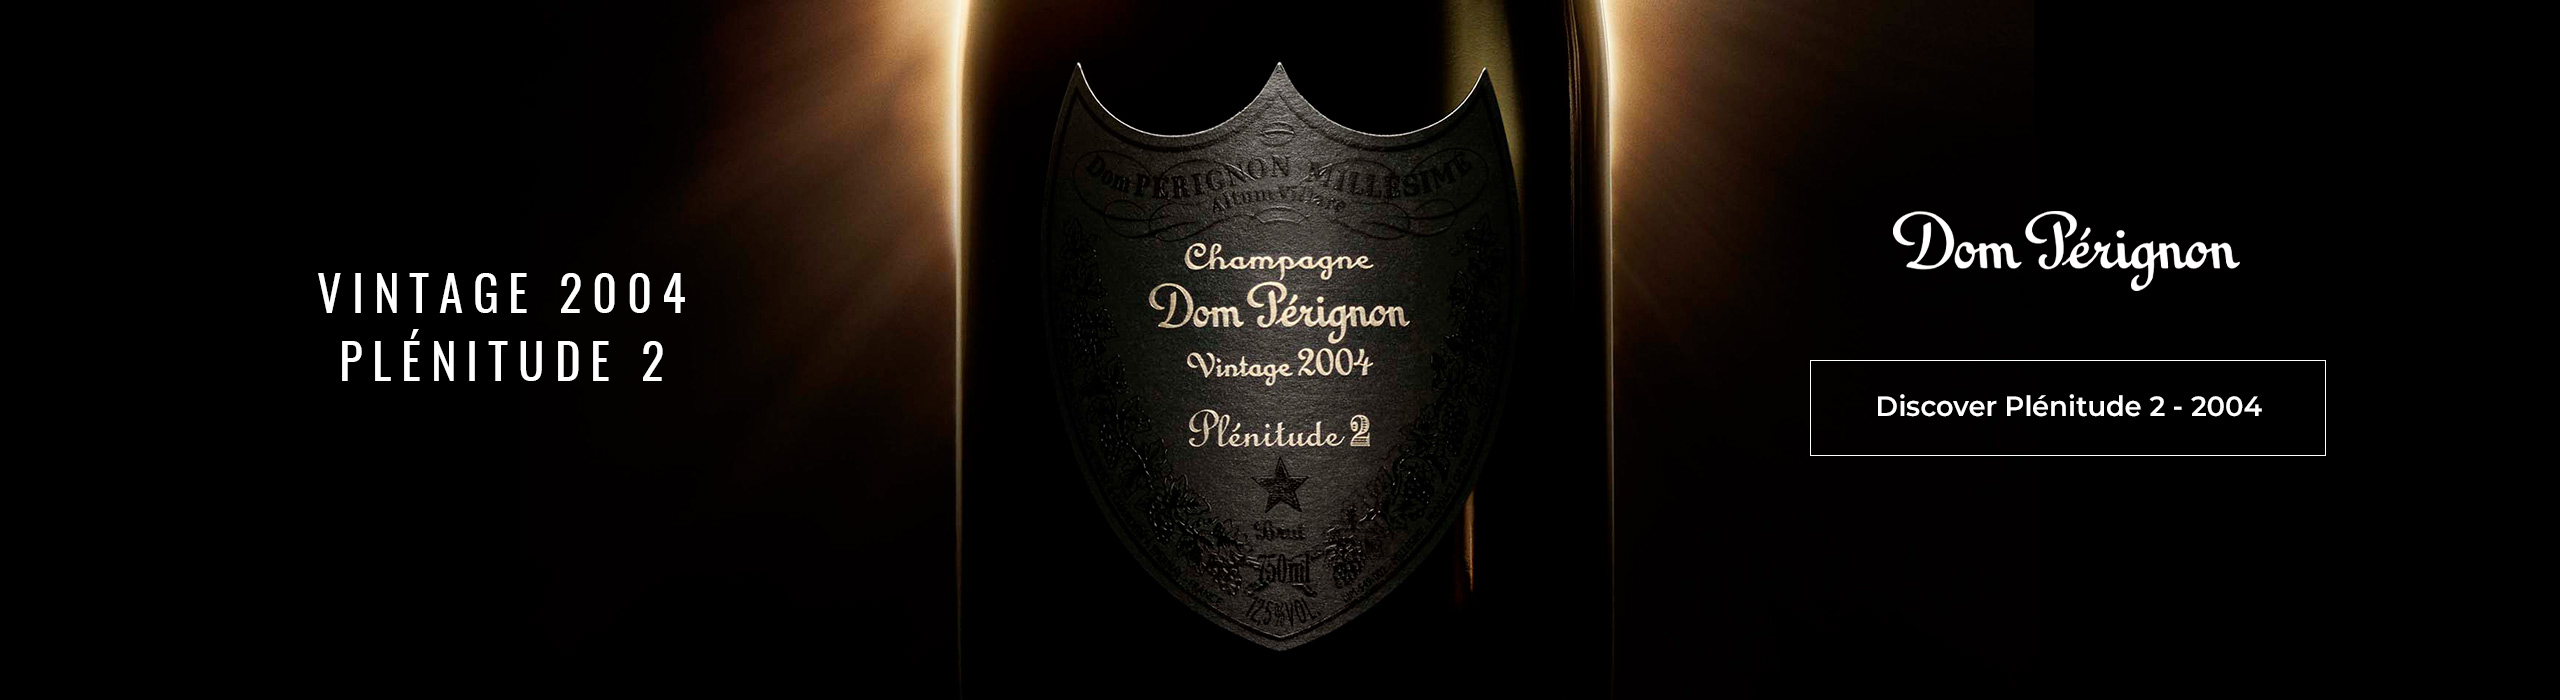 Champagne Dom Pérignon Vintage 2004 P2